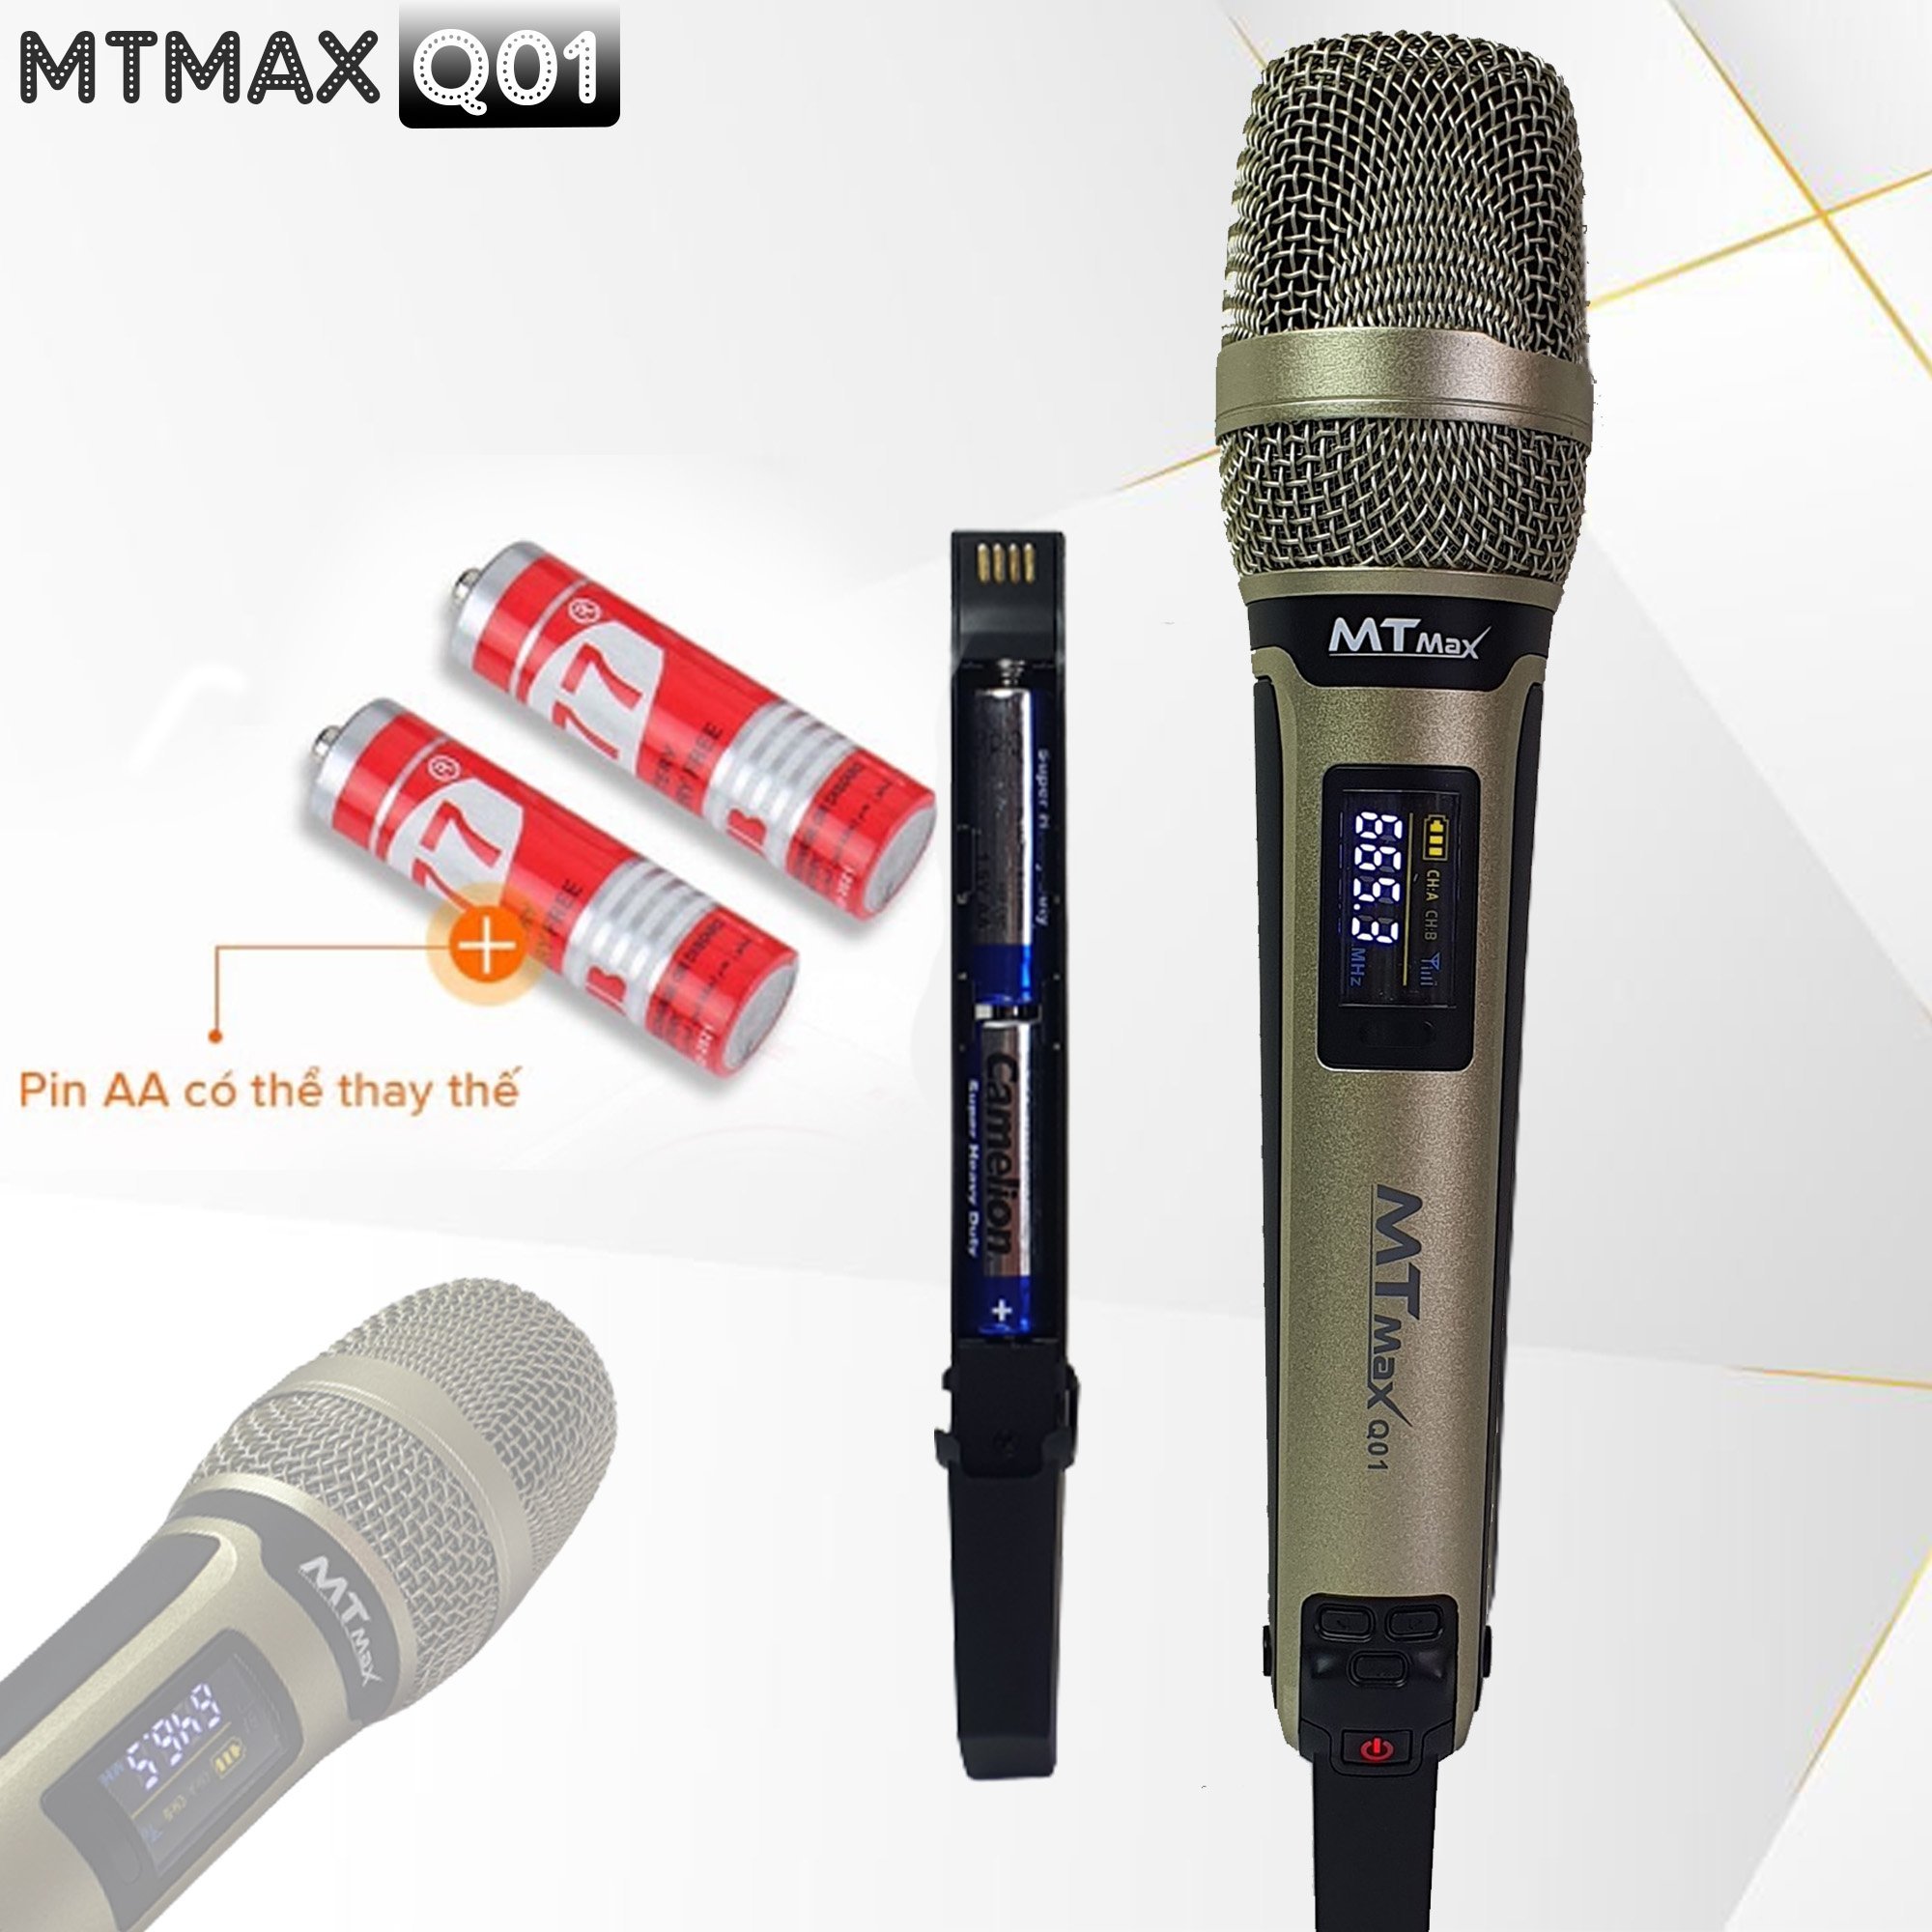 Micro không dây đa năng MTMAX Q01 - Micro không dây giá tốt, sử dụng cho mọi loại thiết bị âm thanh - Micro dành cho loa kéo, loa bluetooth, amply - Màn hình Led hiển thị thông số - Âm thanh cực hay, giá cực rẻ hàng chính hãng